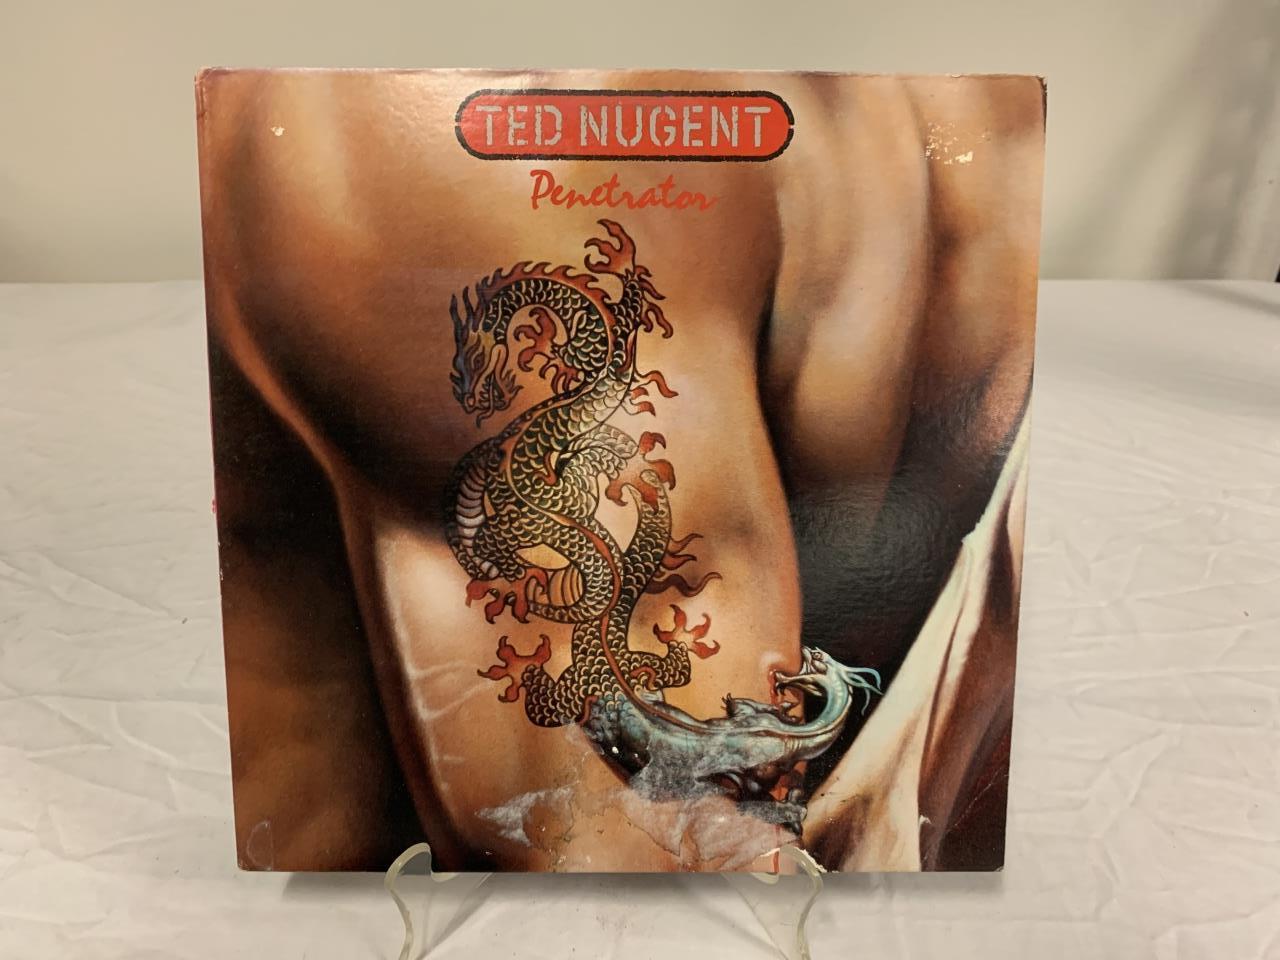 TED NUGENT Penetrator LP Album Record 1984